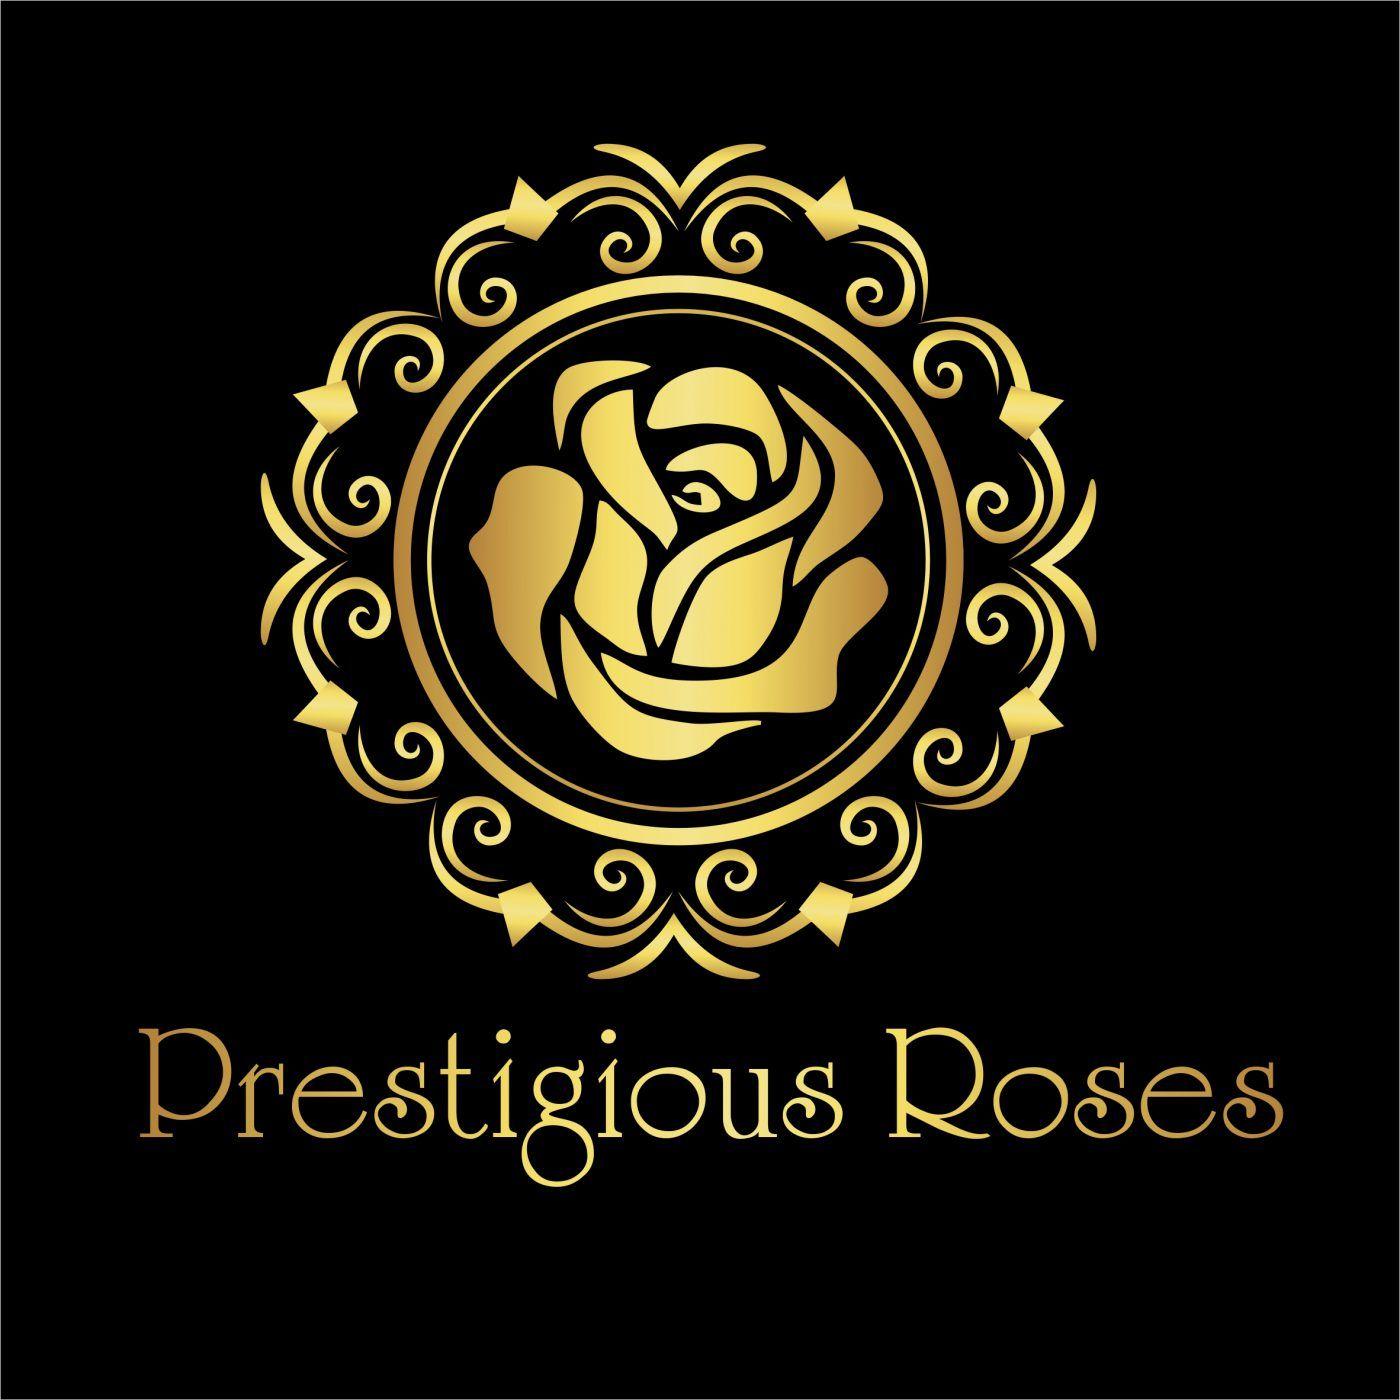 Gold Rose Logo - Golden Rose Arrangement – Preserve Roses